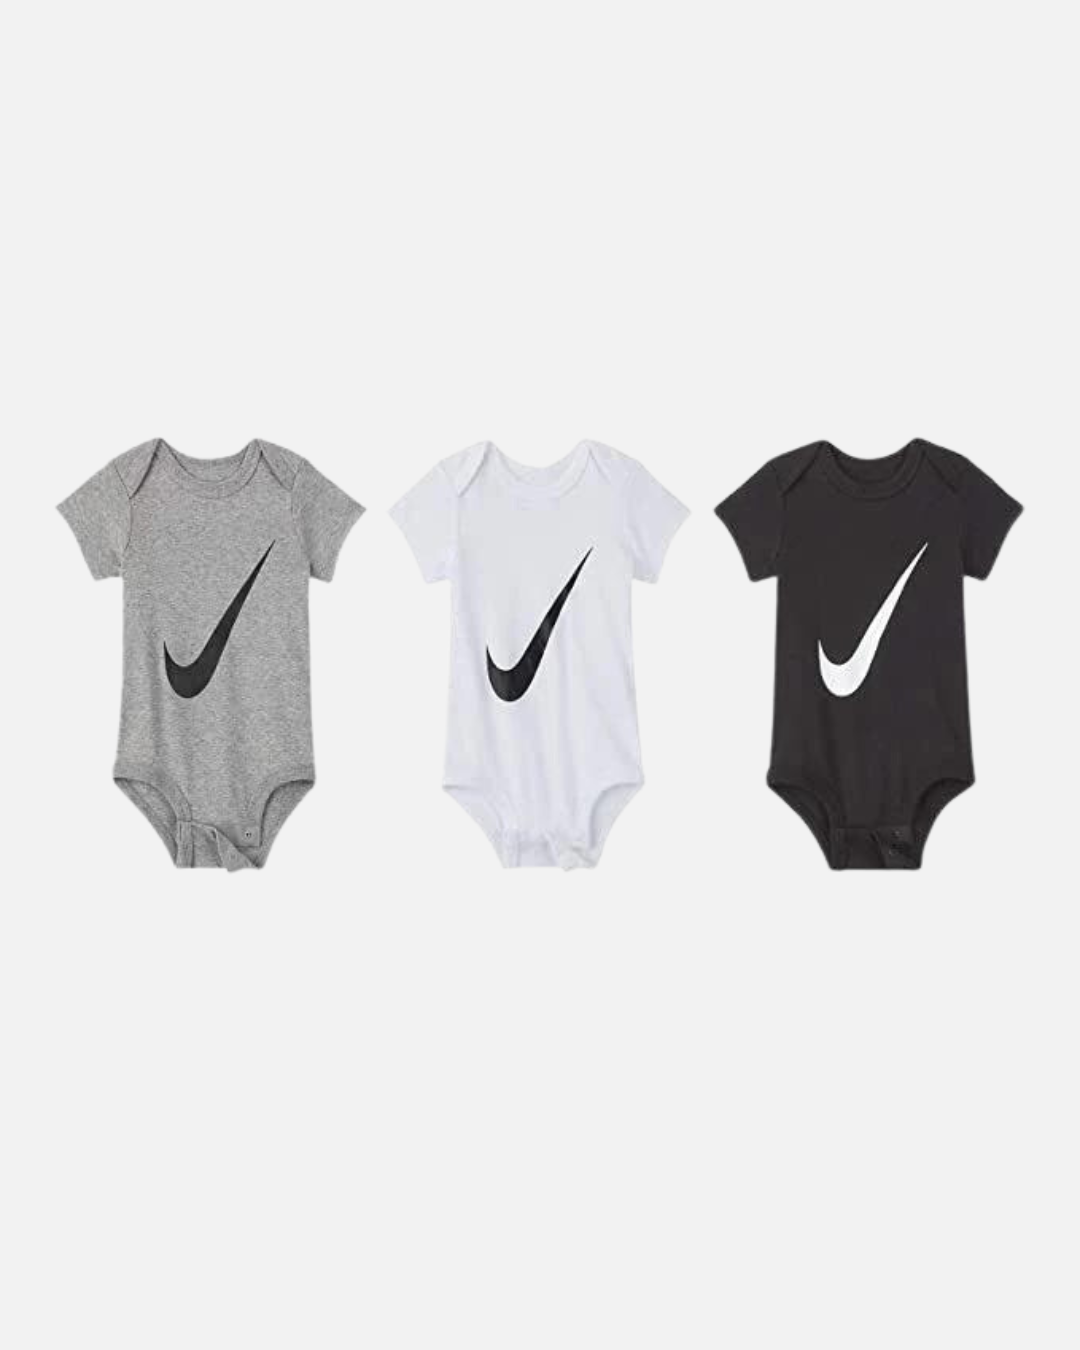 Body neonato Nike Sportswear - Confezione da 3 - Grigio/Bianco/Nero